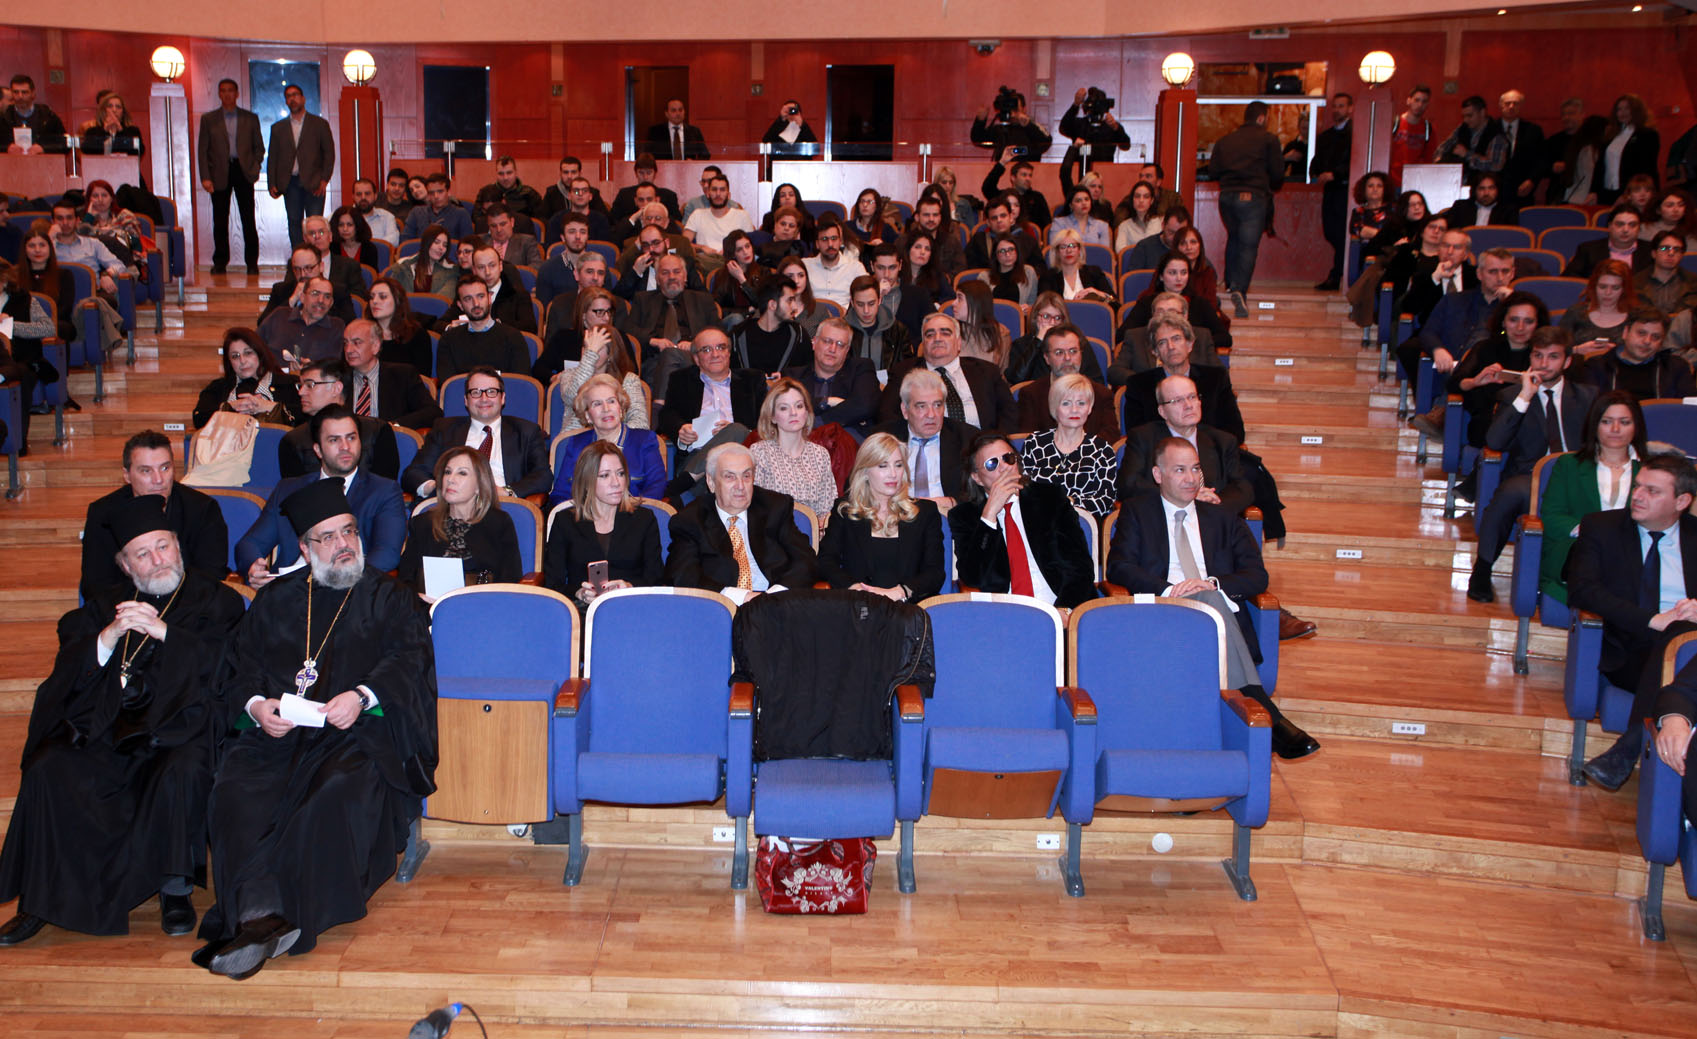 Κοντομηνάς, Ψινάκης, Λάτση κι άλλοι σε εκδήλωση της Θεσσαλονίκης (ΦΩΤΟ)